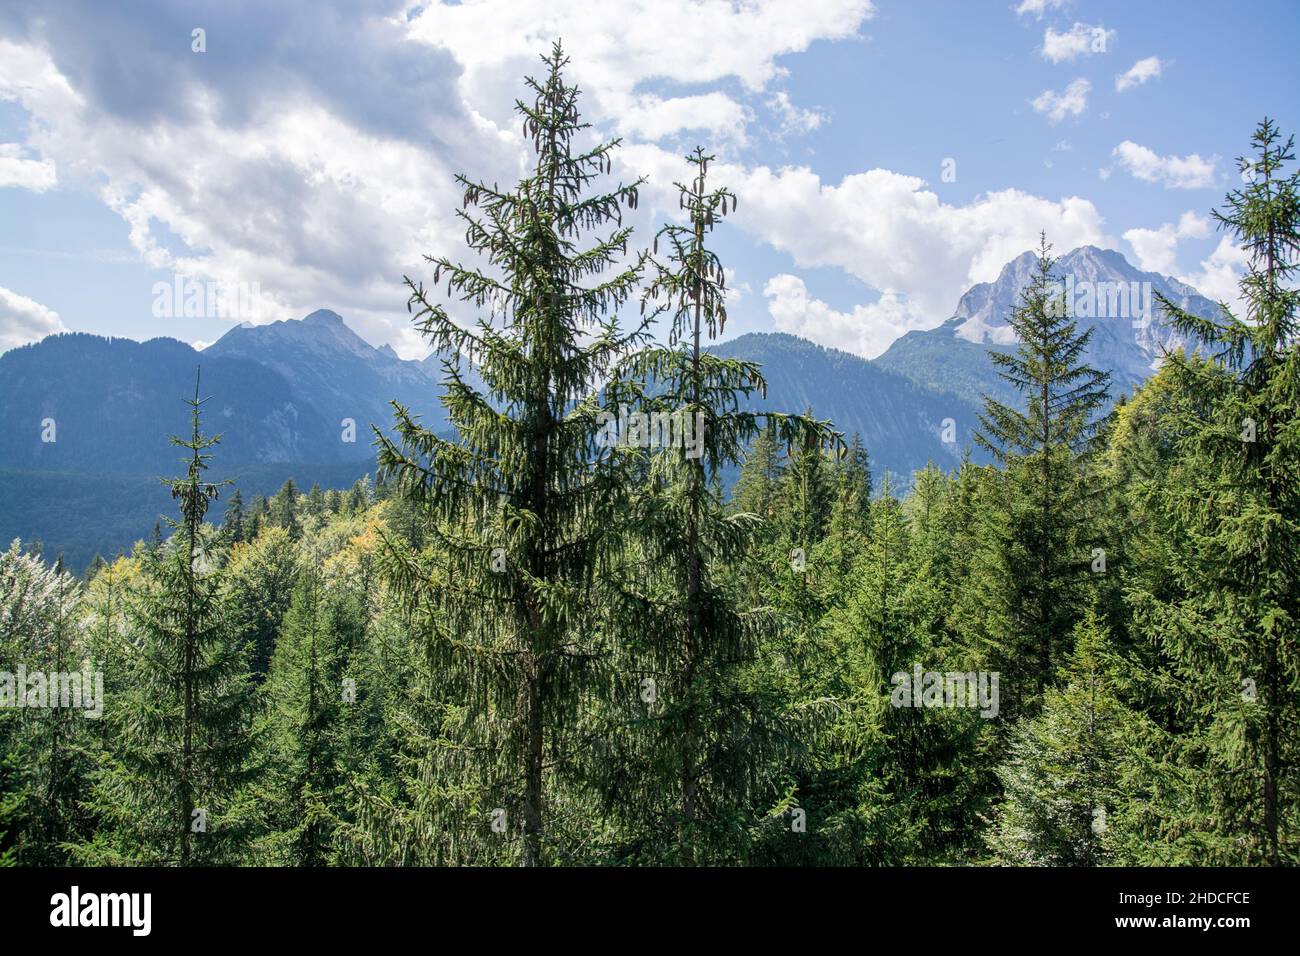 Das Wettersteingebirge ist eine Gebirgsgruppe der Nördlichen Kalkalpen in den Ostalpen zwischen Garmisch-Partenkirchen, Mittenwald, Seefeld in Tirol u Stock Photo